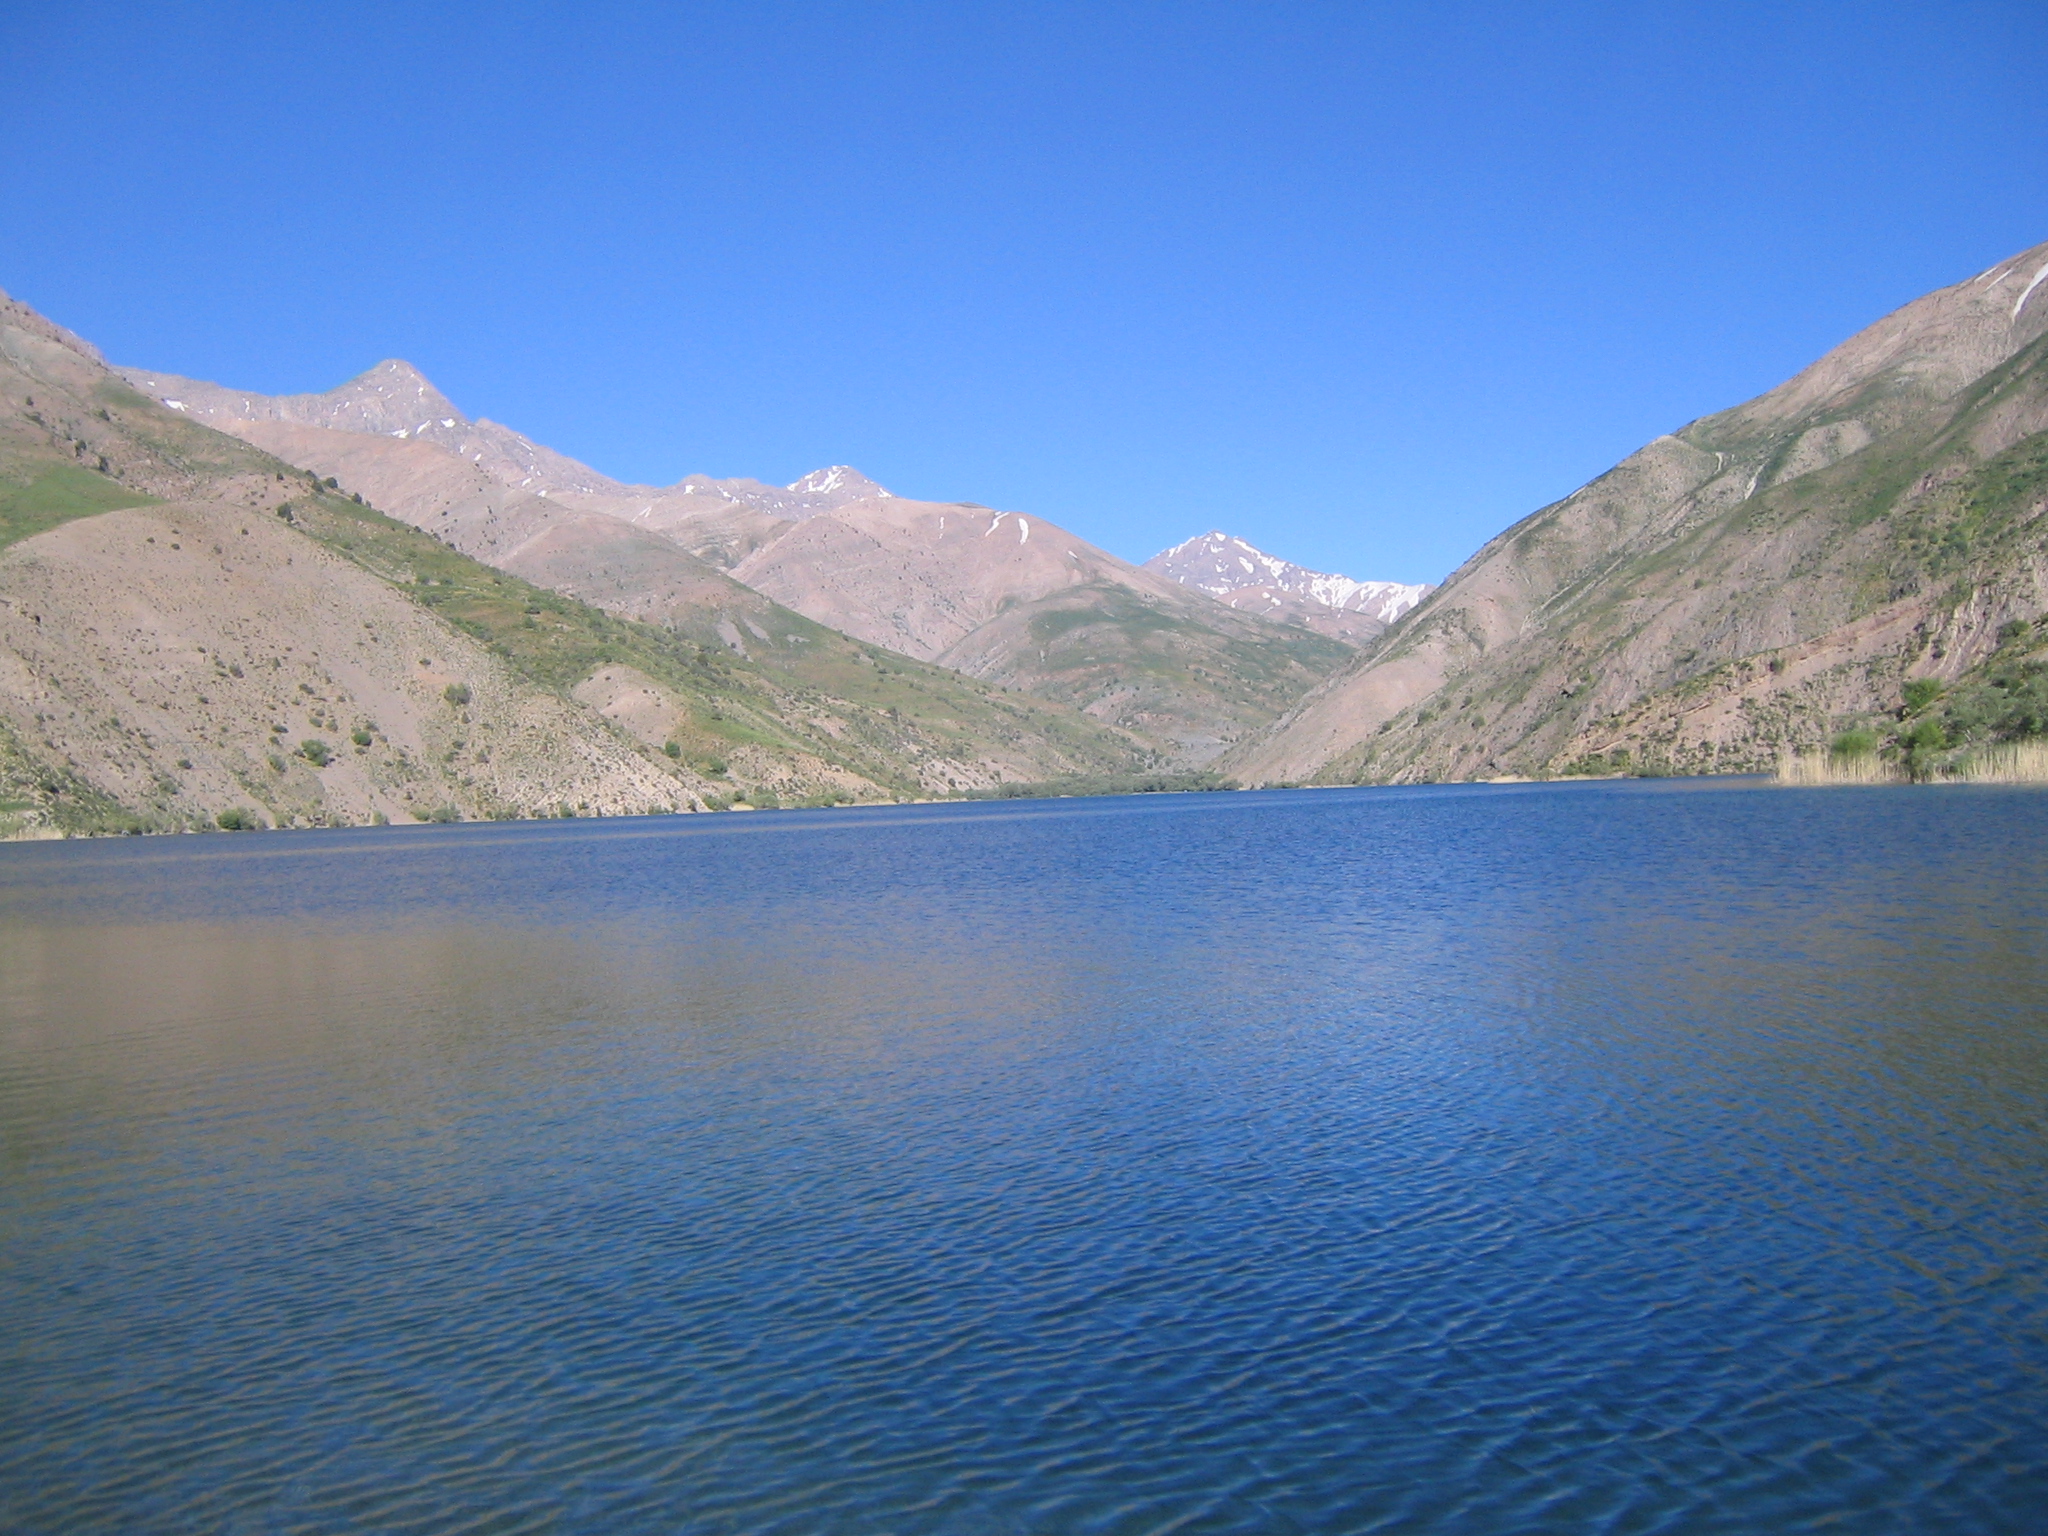 دریاچه گهر یزرگ 